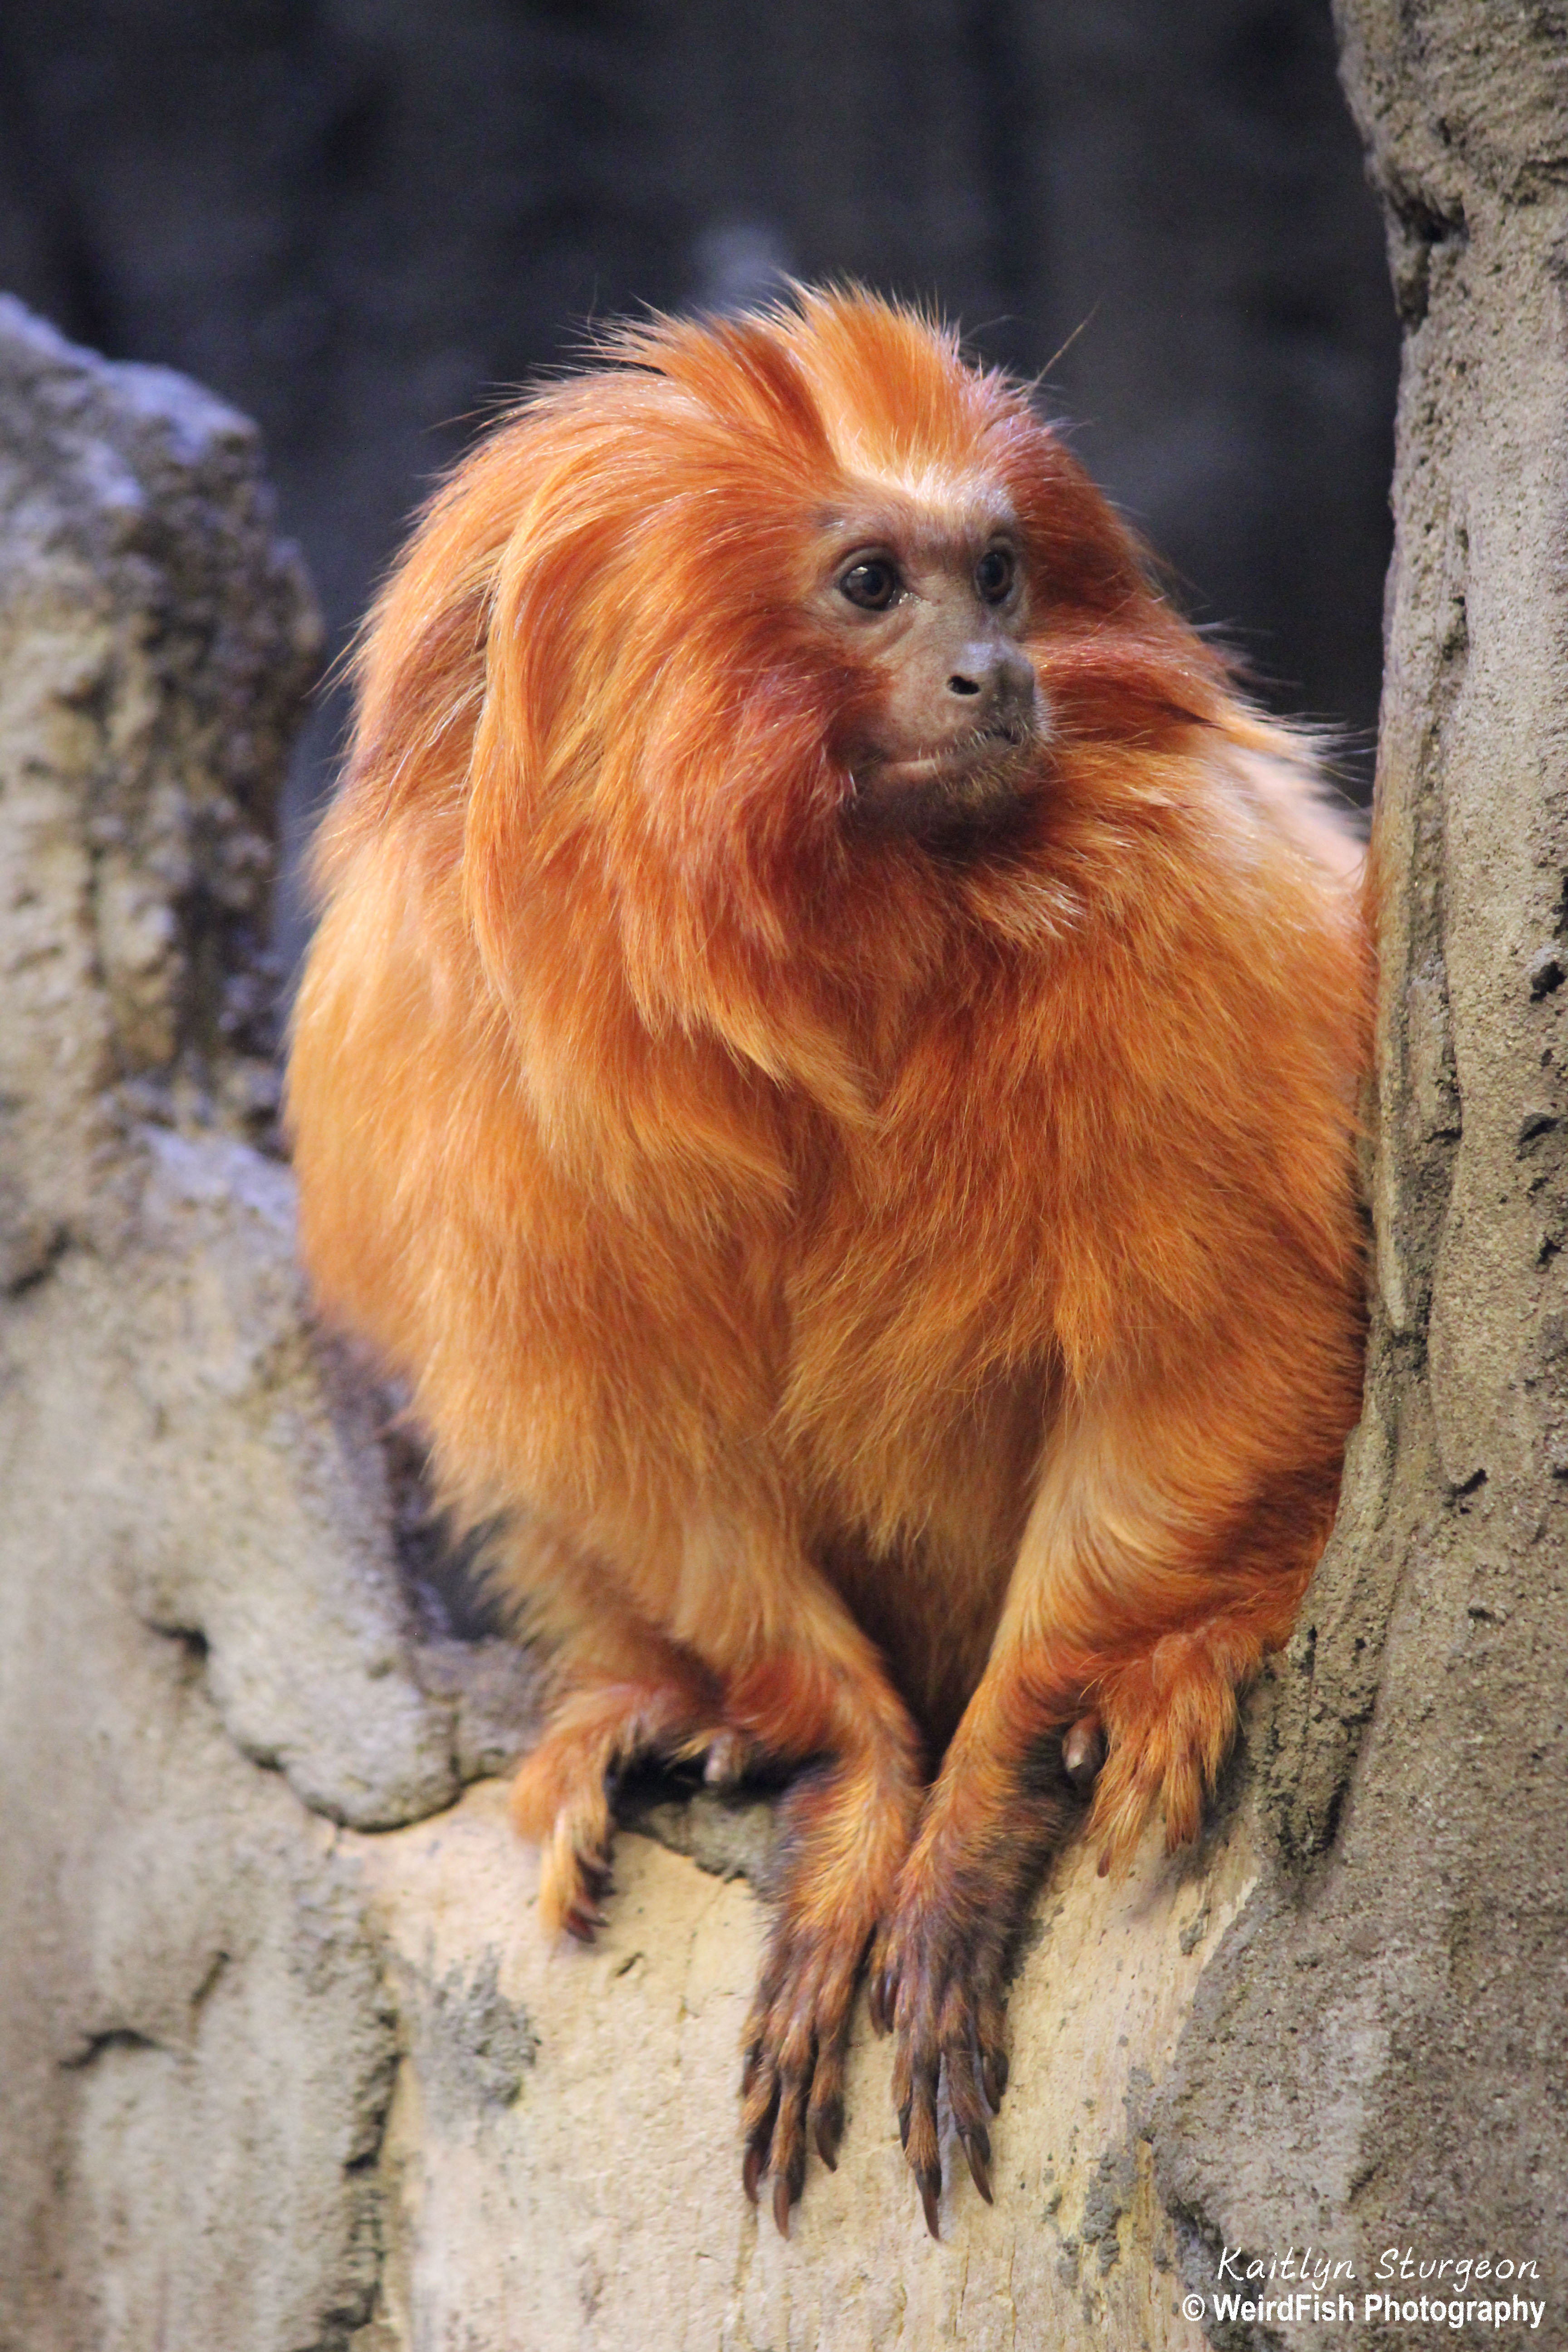 Orange Monkeys, Types of Orange-colored Monkeys